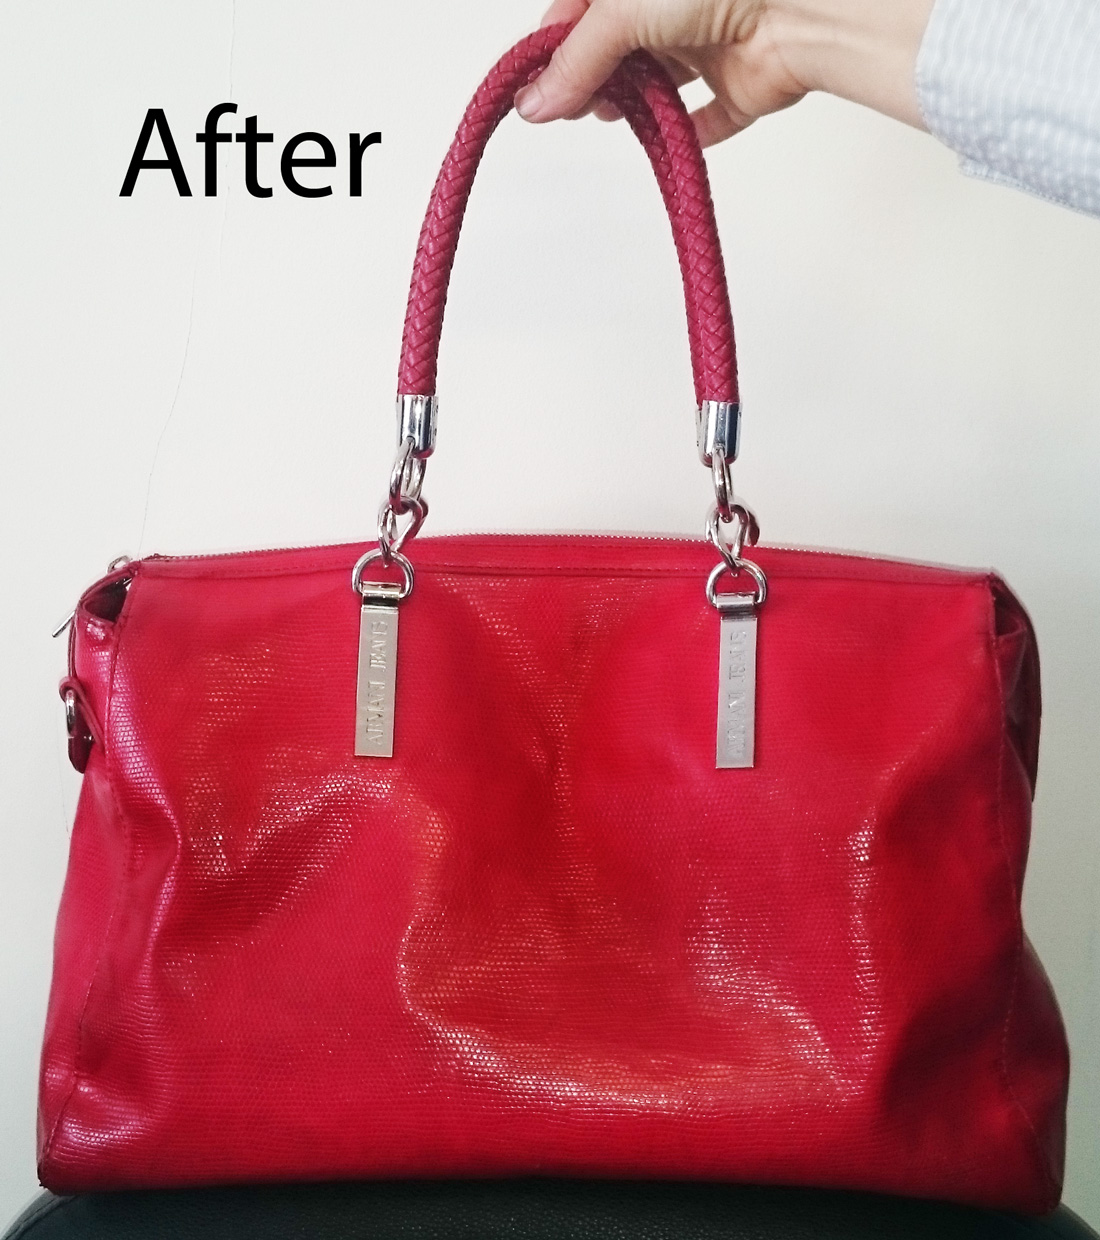 ARMANI handbag repair – new handles and corners – The Shoe Carers